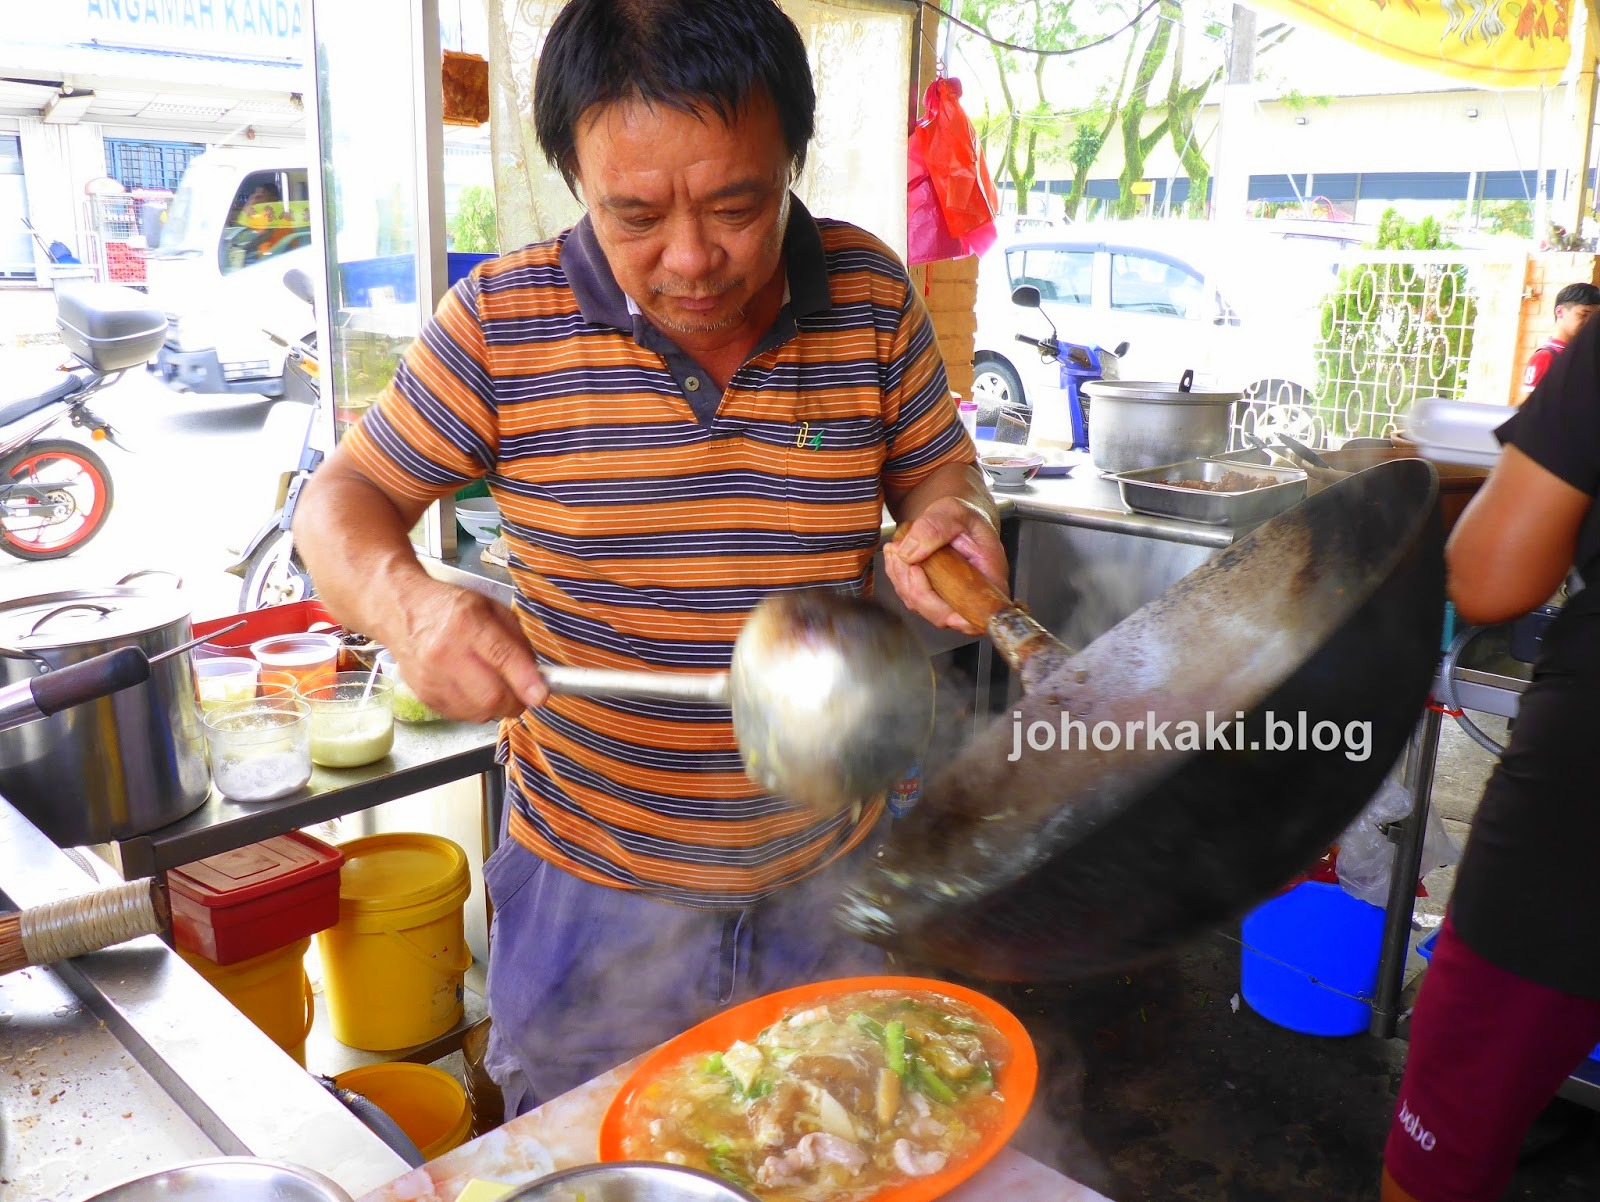 24+ About tony boey johor kaki food blogger ideas